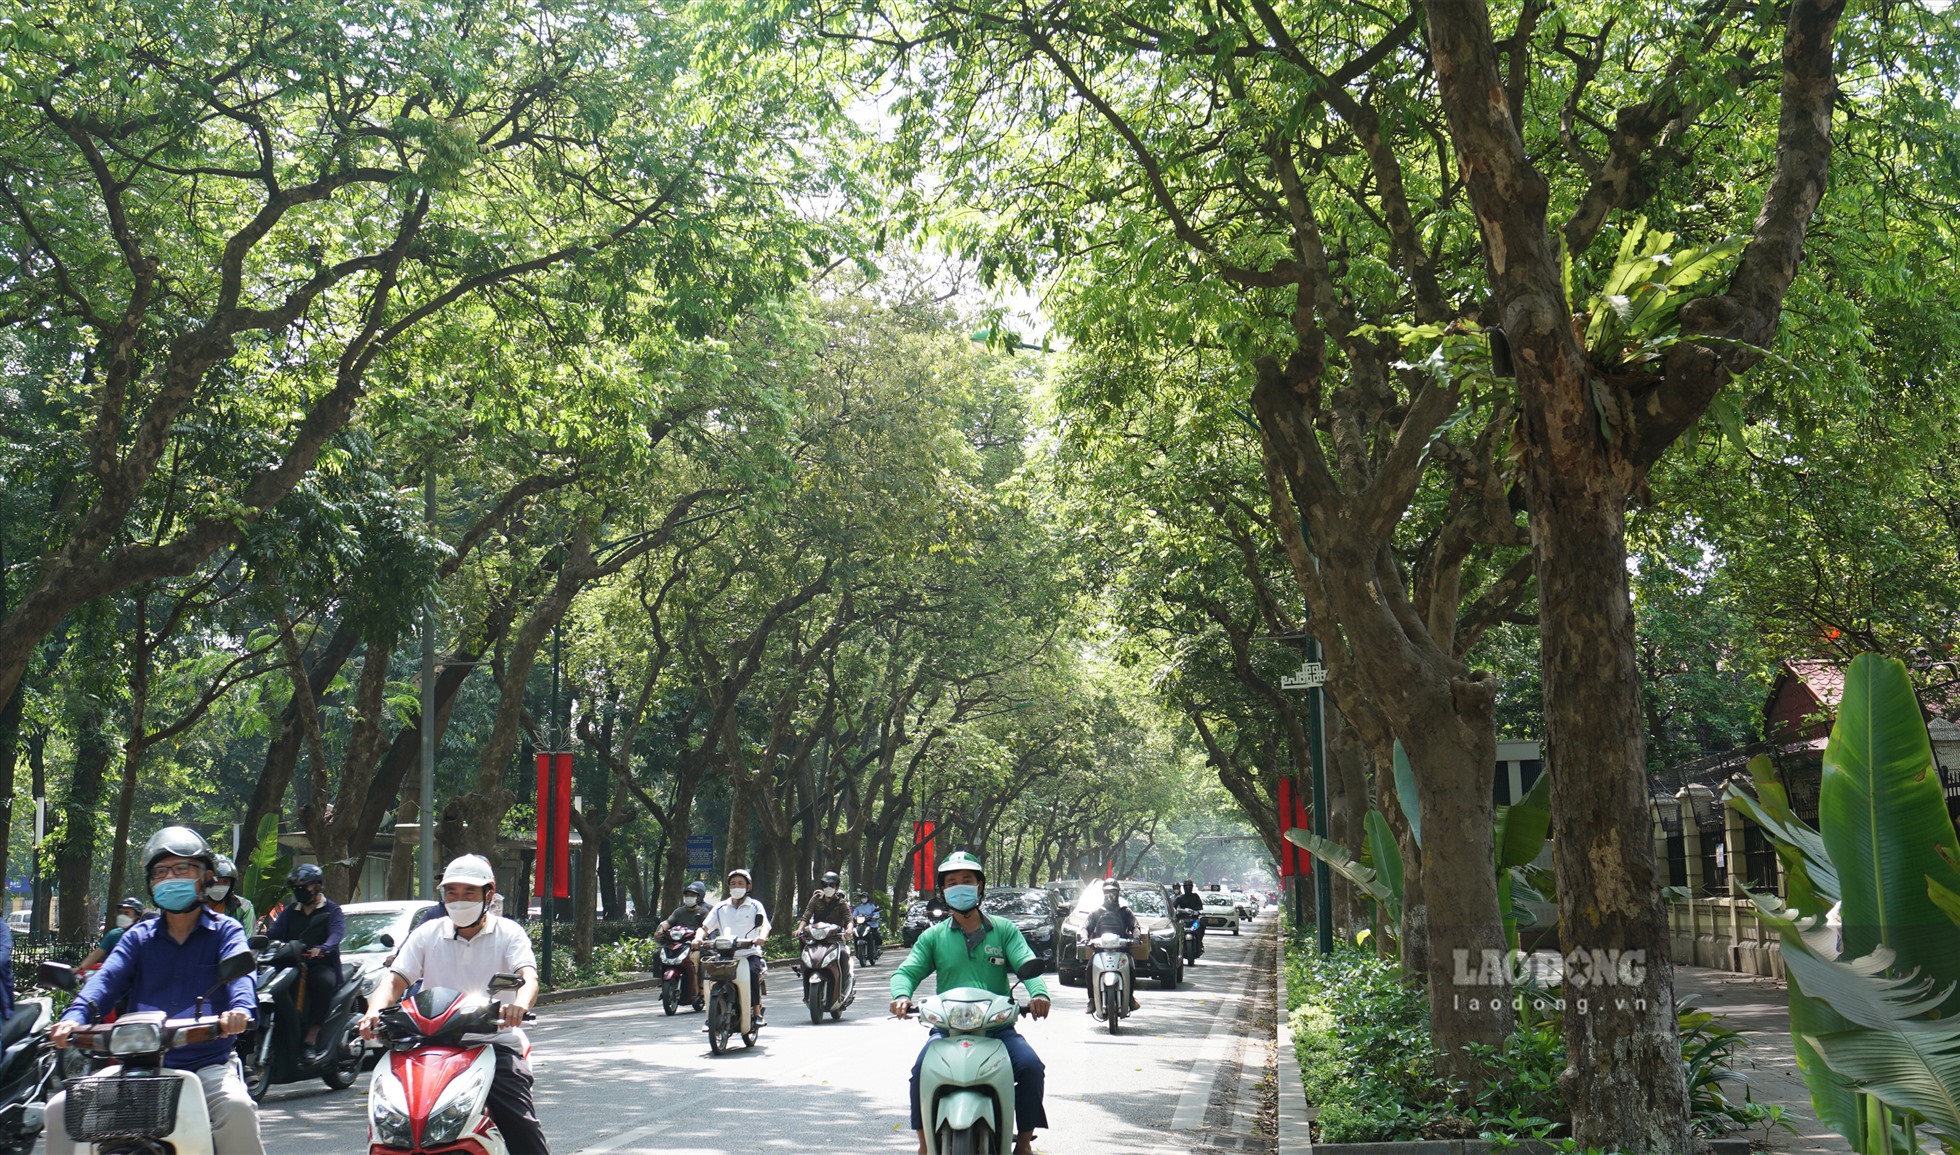 Hàng cây xanh cổ thụ ôm trọn không gian tuyến đường tạo cảm giác mát mẻ vào những ngày hè oi bức.